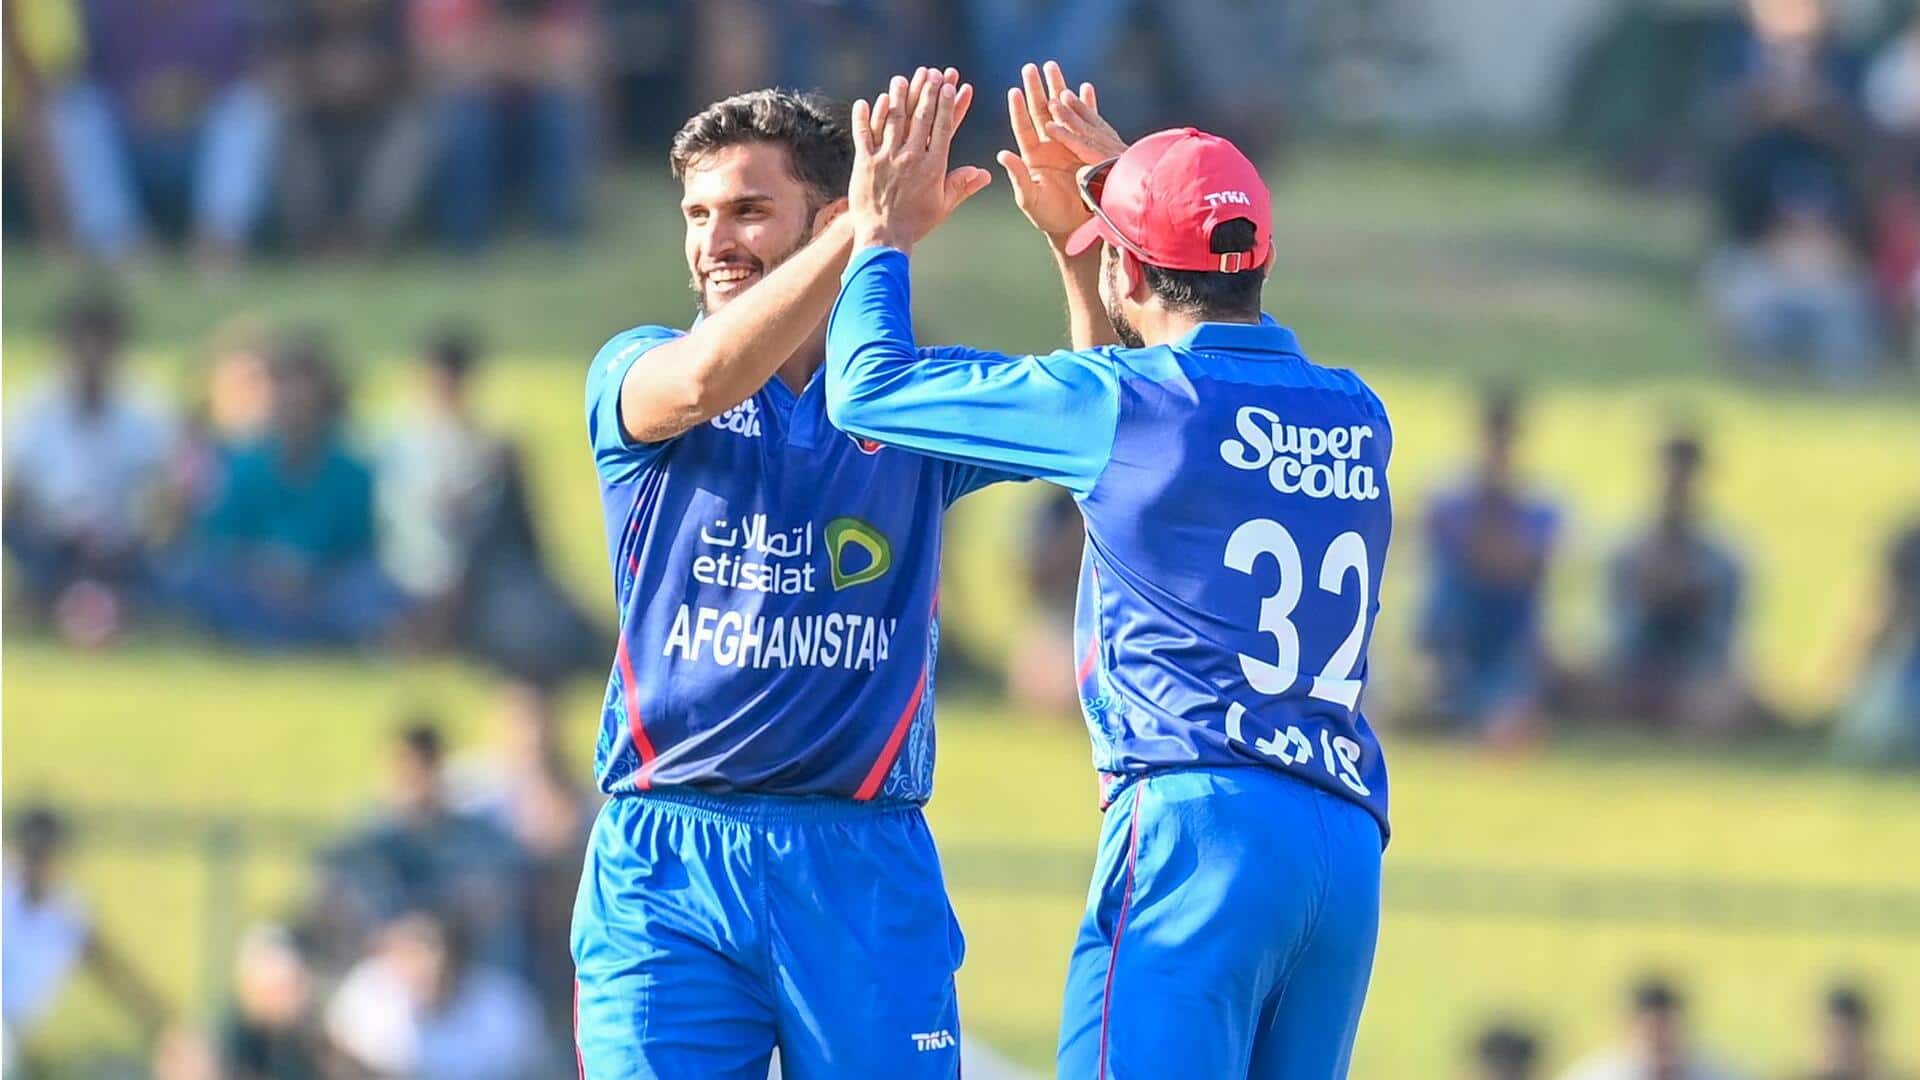 श्रीलंका बनाम अफगानिस्तान, दूसरा वनडे: अजमतुल्लाह उमरजई ने किया अपना सर्वश्रेष्ठ गेंदबाजी प्रदर्शन, जानिए आंकड़े